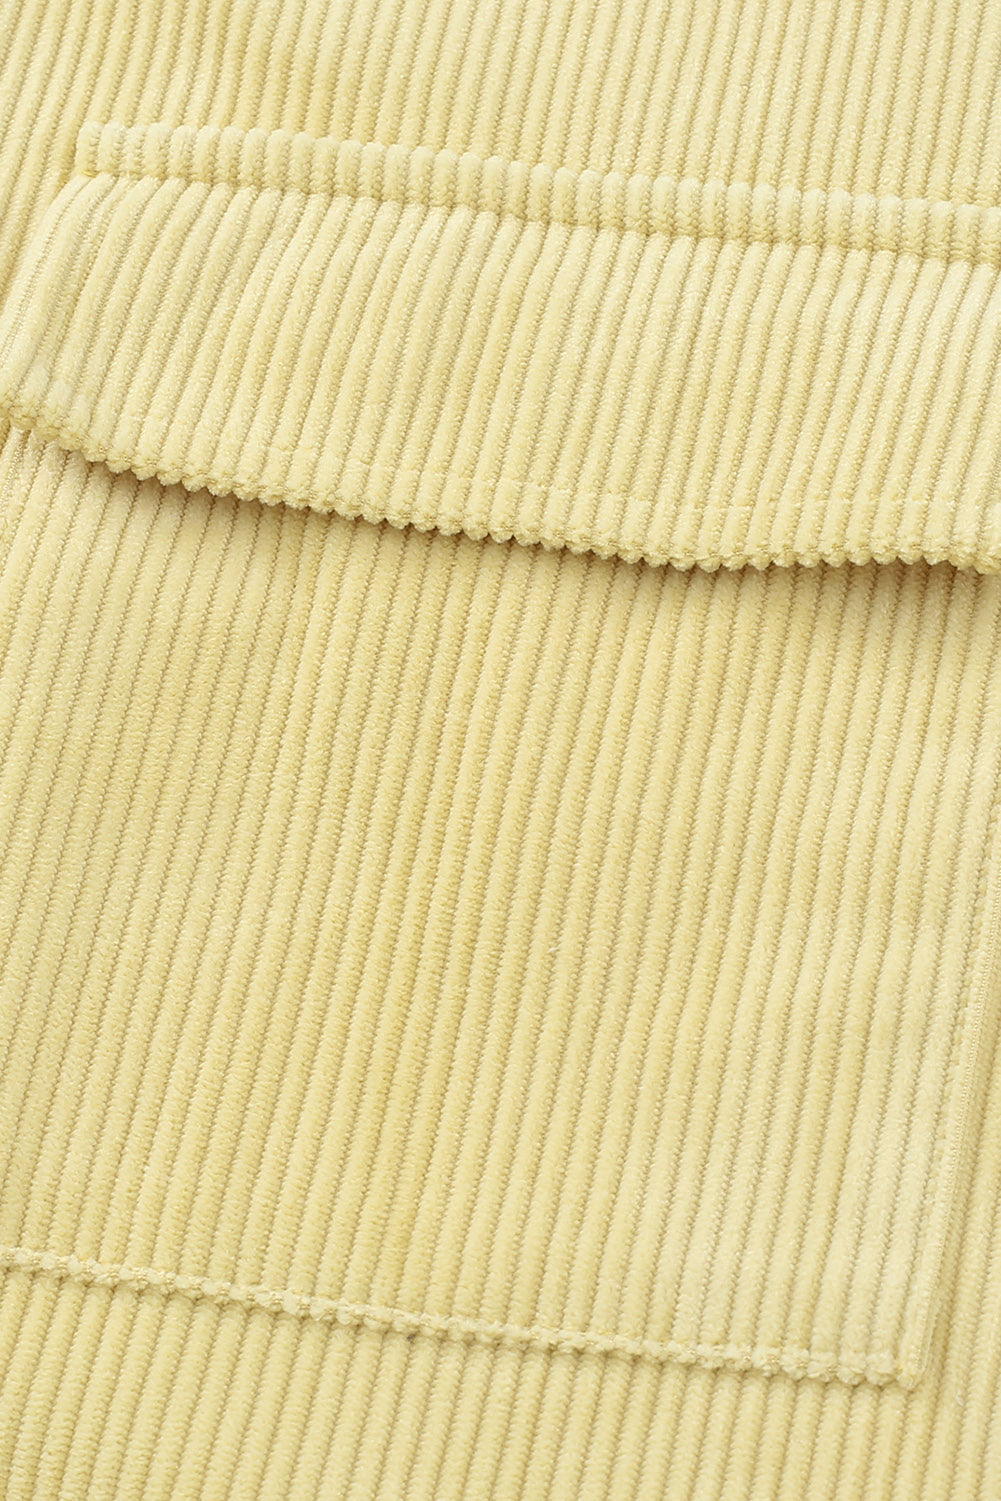 Veste beige texturée côtelée avec poches et boutons